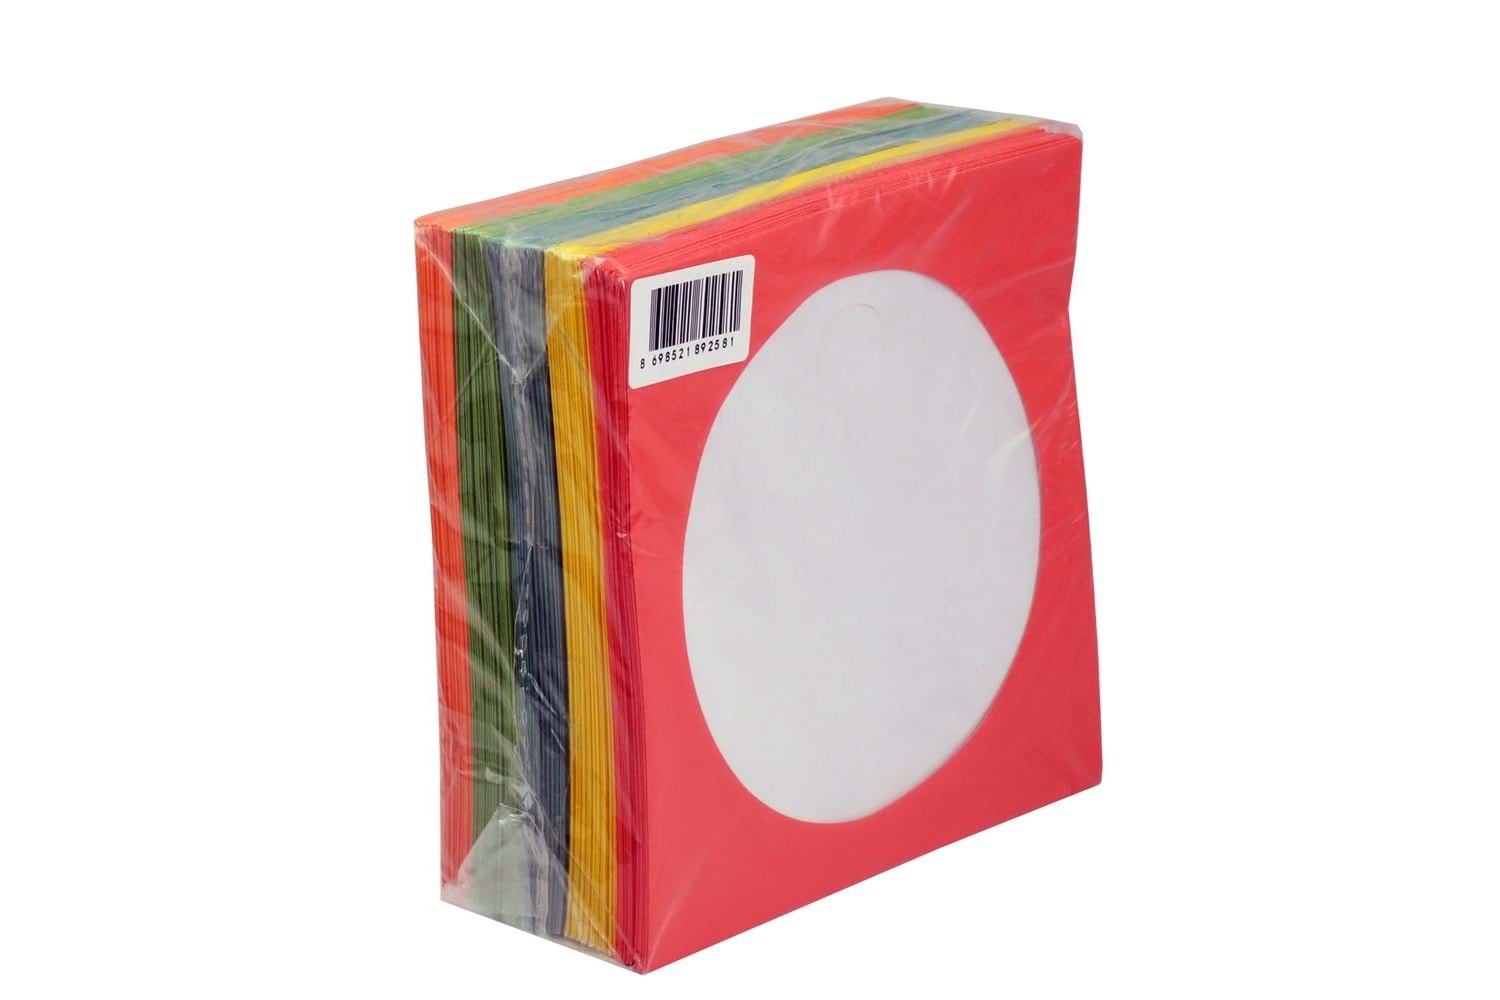 CD&DVD Zarfı Renkli 80gr 100 lü Paket Pencereli (Kırmızı,Sarı,Yeşil,Mavi,Turuncu)